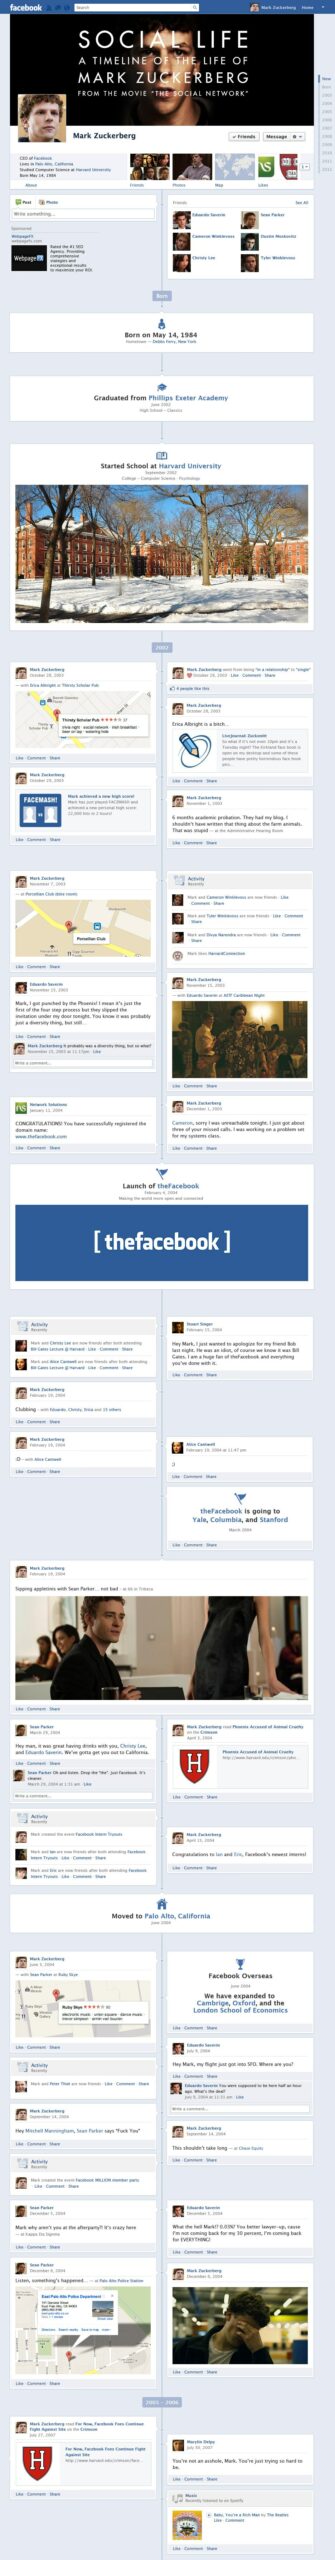  Mark Zuckerberg的Facebook Timeline 